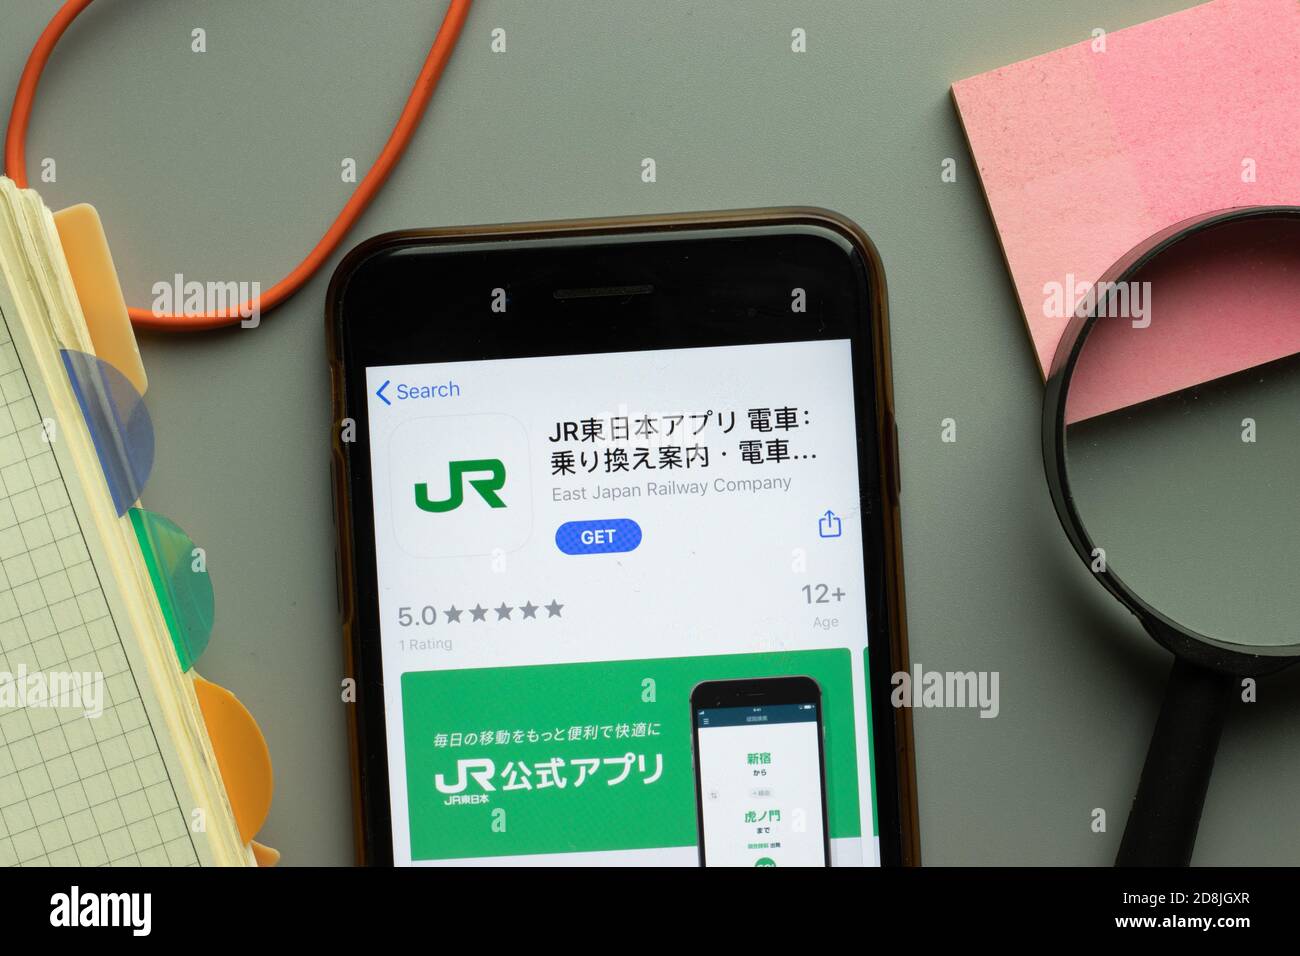 New York, USA - 26 Ottobre 2020: Logo dell'app mobile della JR East Japan Railway Company sullo schermo del telefono in primo piano, editoriale illustrativo Foto Stock